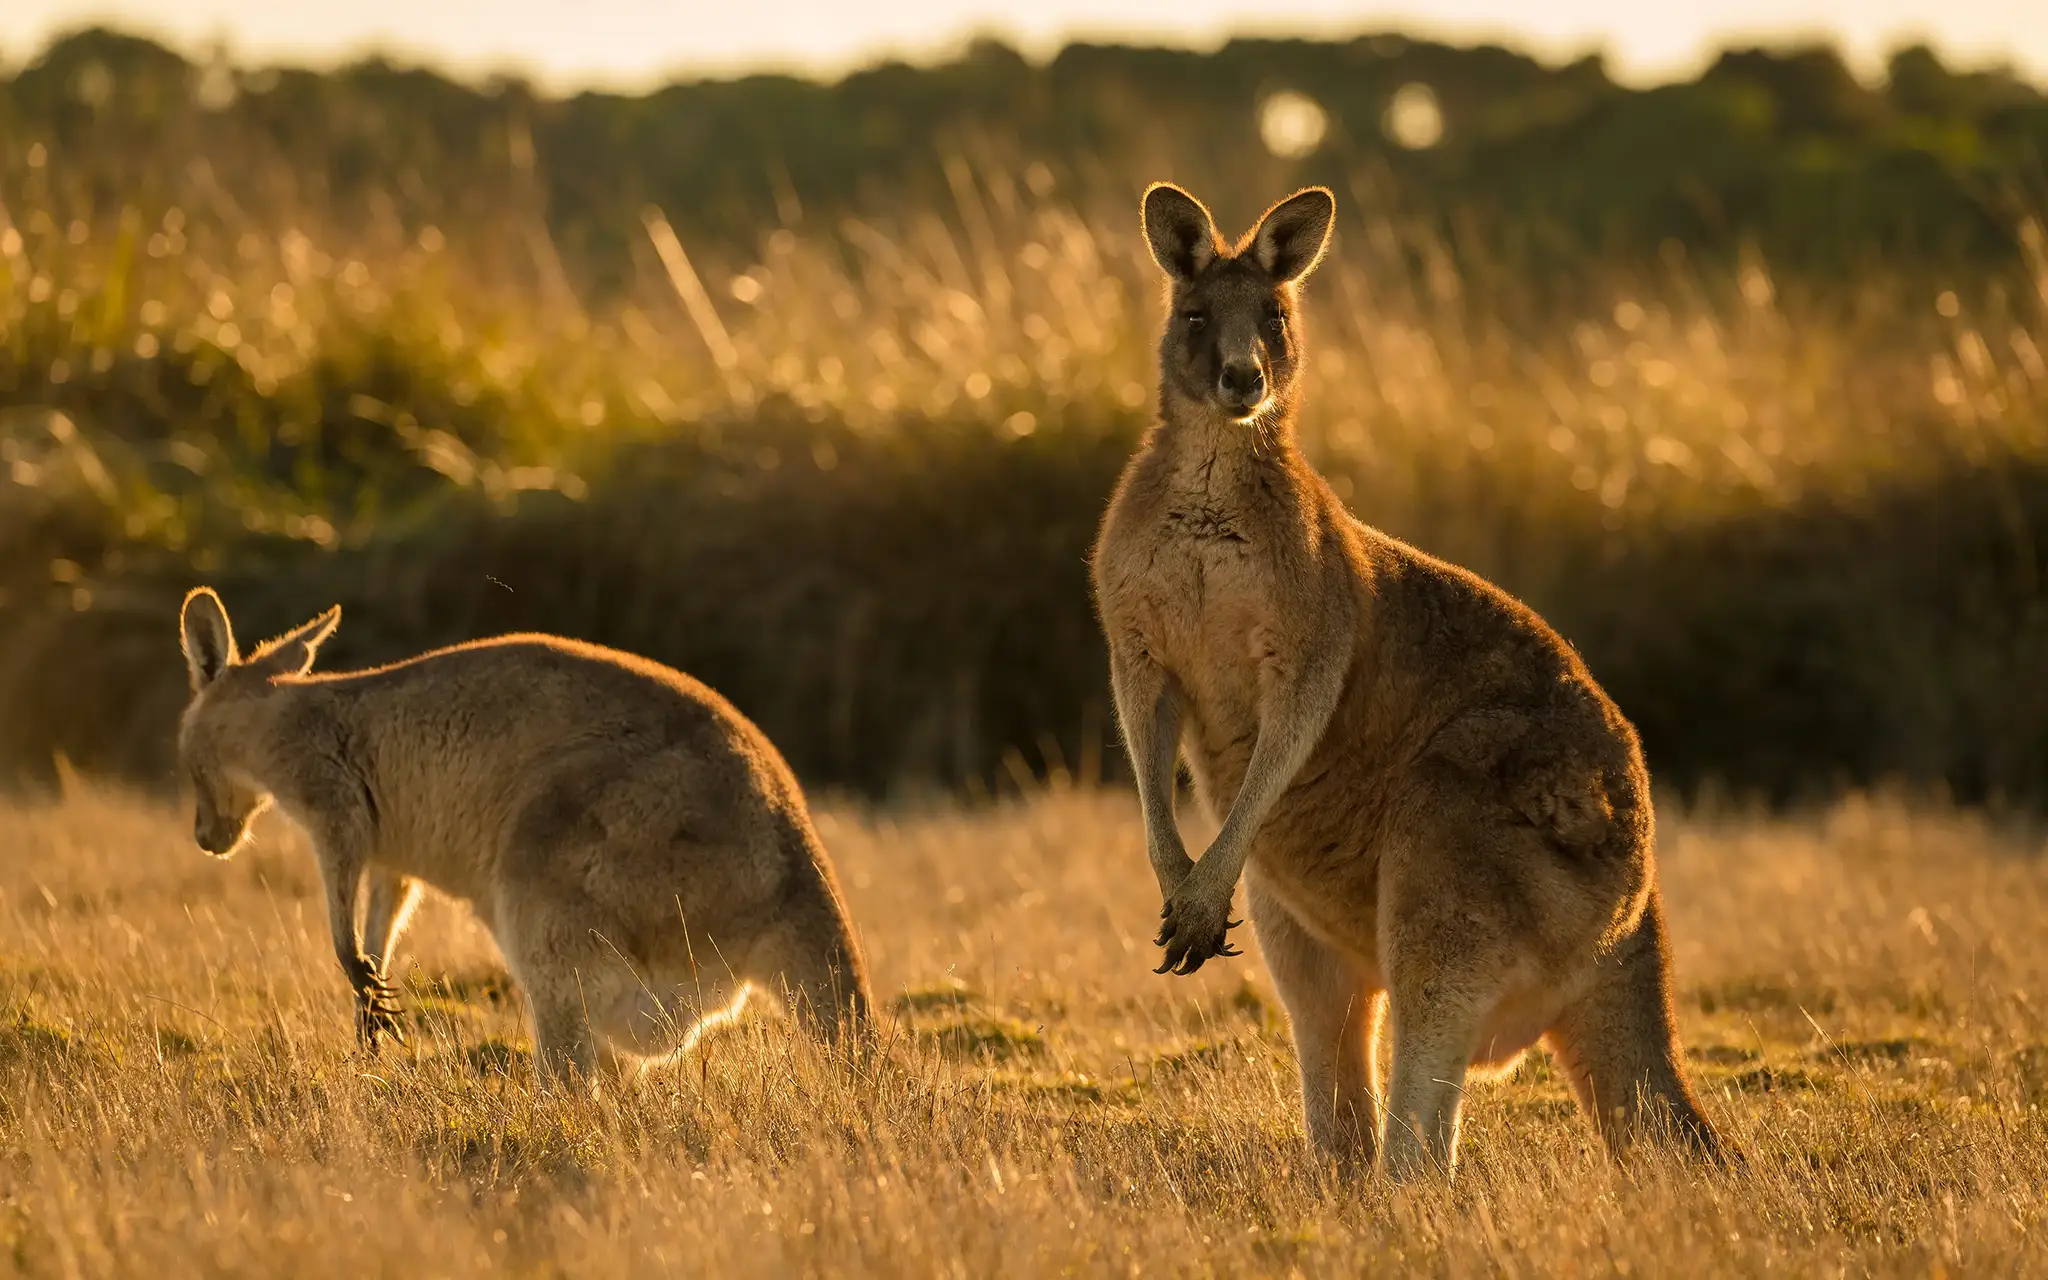 Kangaroo in open field during a golden sunset.